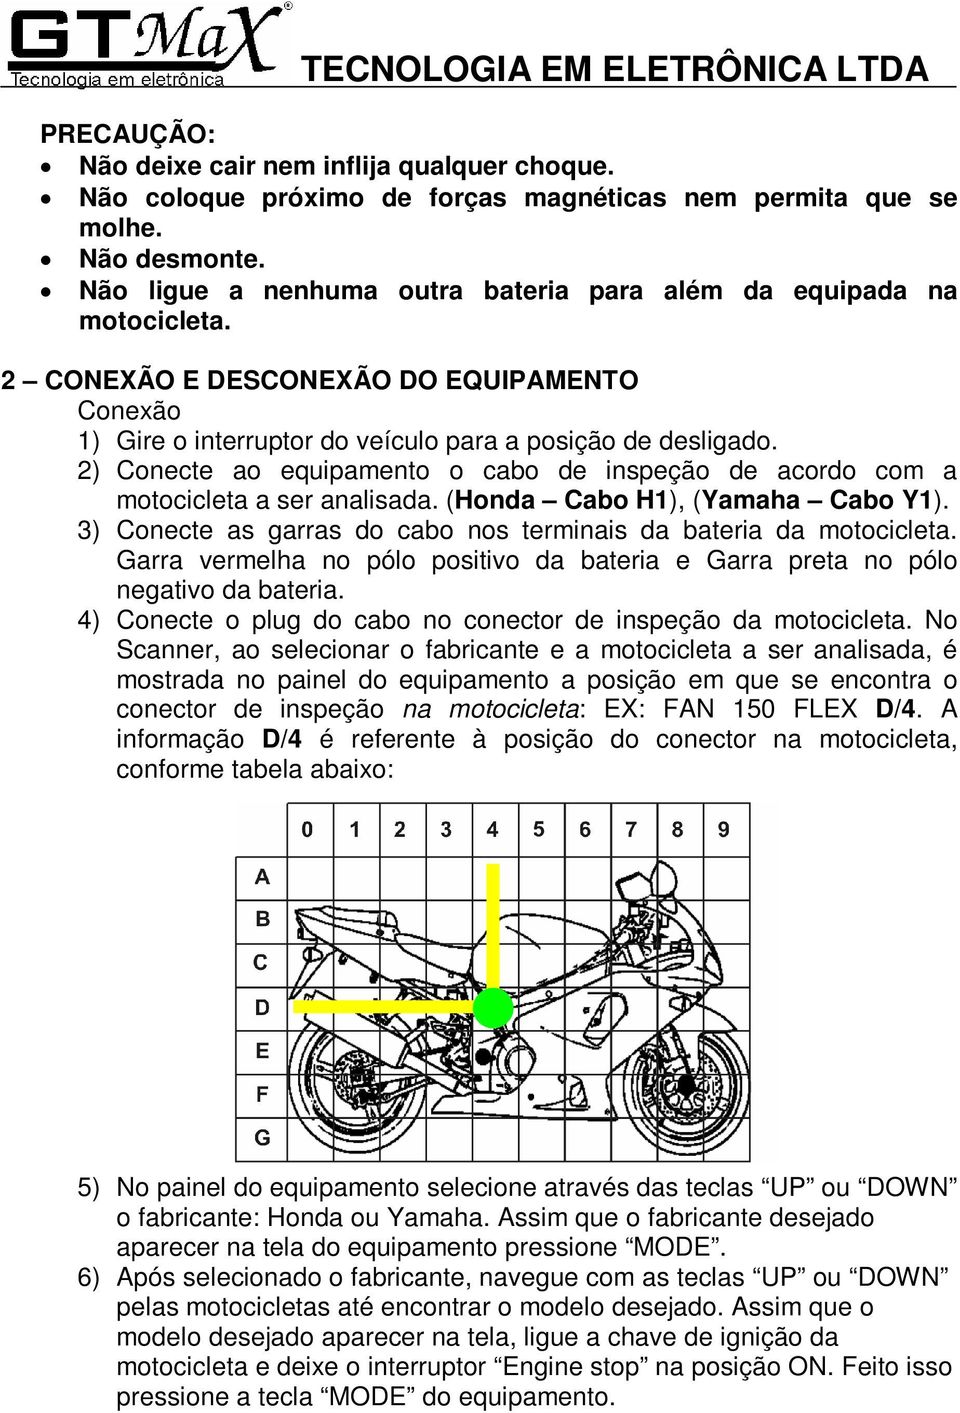 2) Conecte ao equipamento o cabo de inspeção de acordo com a motocicleta a ser analisada. (Honda Cabo H1), (Yamaha Cabo Y1). 3) Conecte as garras do cabo nos terminais da bateria da motocicleta.